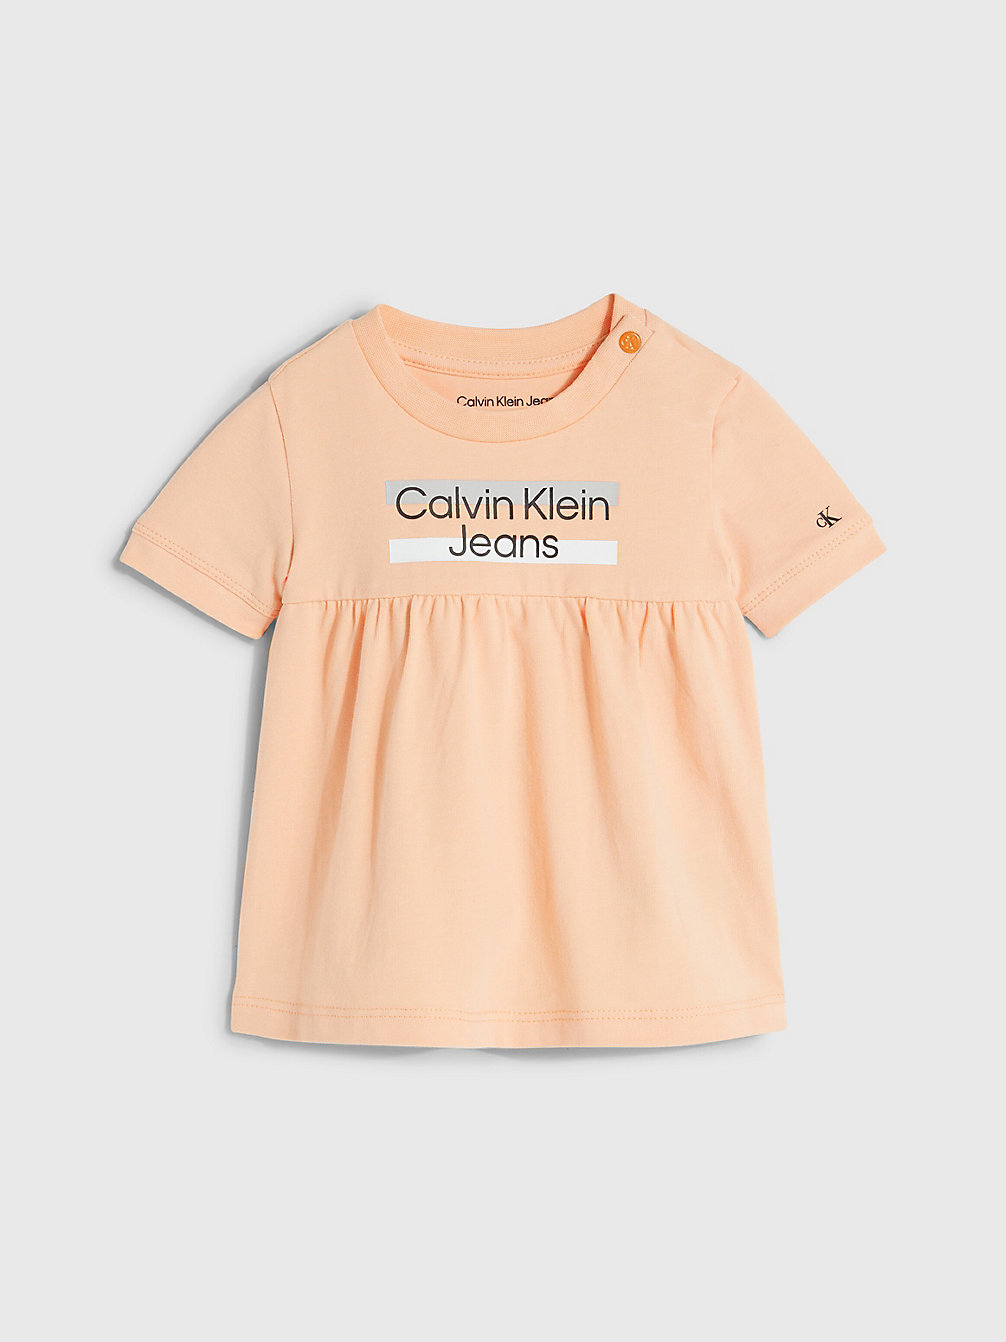 FRESH CANTALOUPE > Baby-Kleid Mit Logo > undefined undefined - Calvin Klein